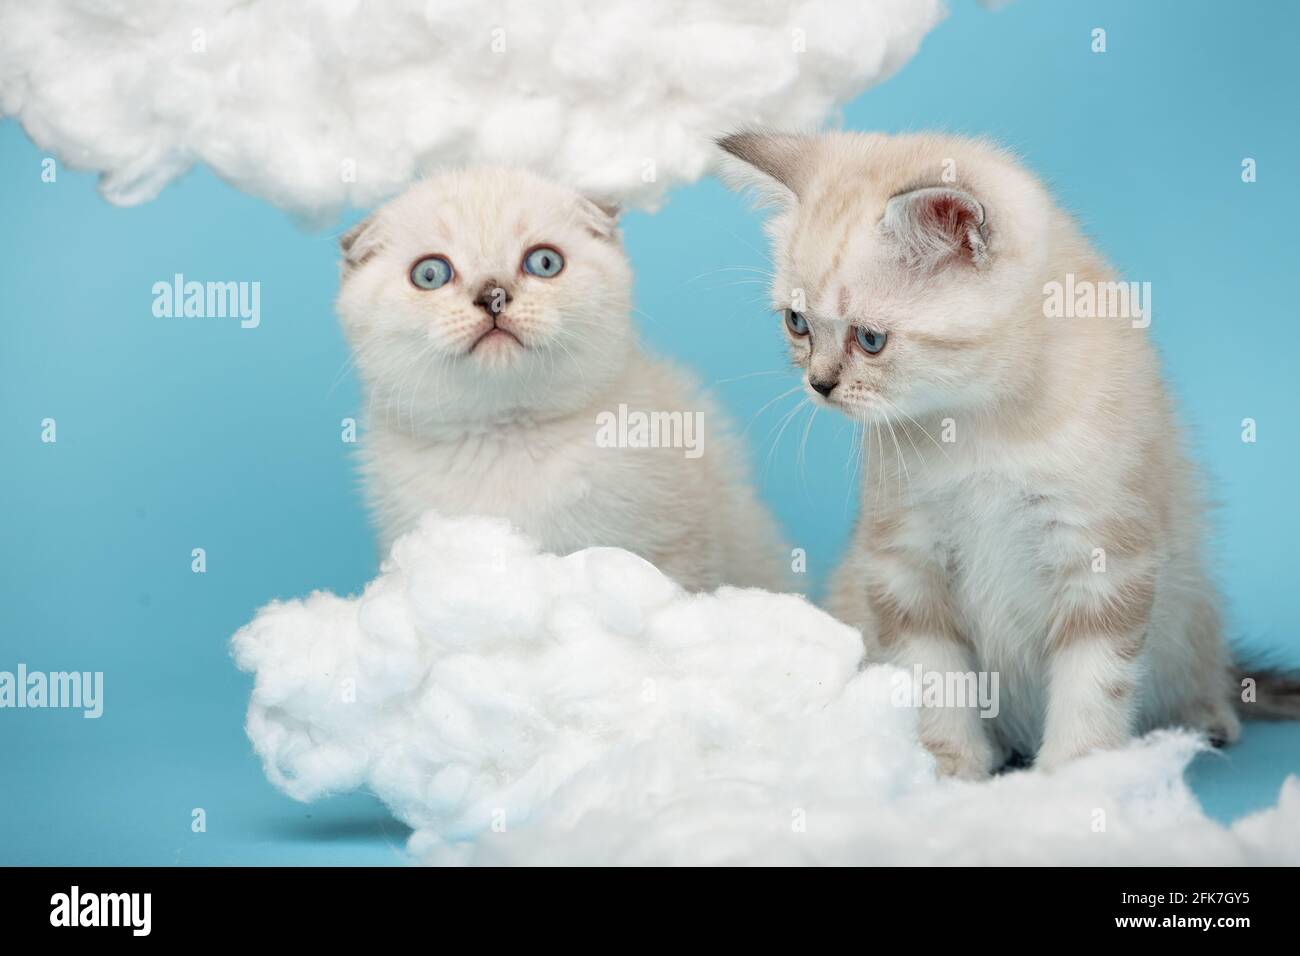 Gros plan de chatons écossais de couleur crème avec des yeux bleus avec grand intérêt regardant les nuages de coton sur un fond bleu. Animaux de compagnie, animaux et chats c Banque D'Images